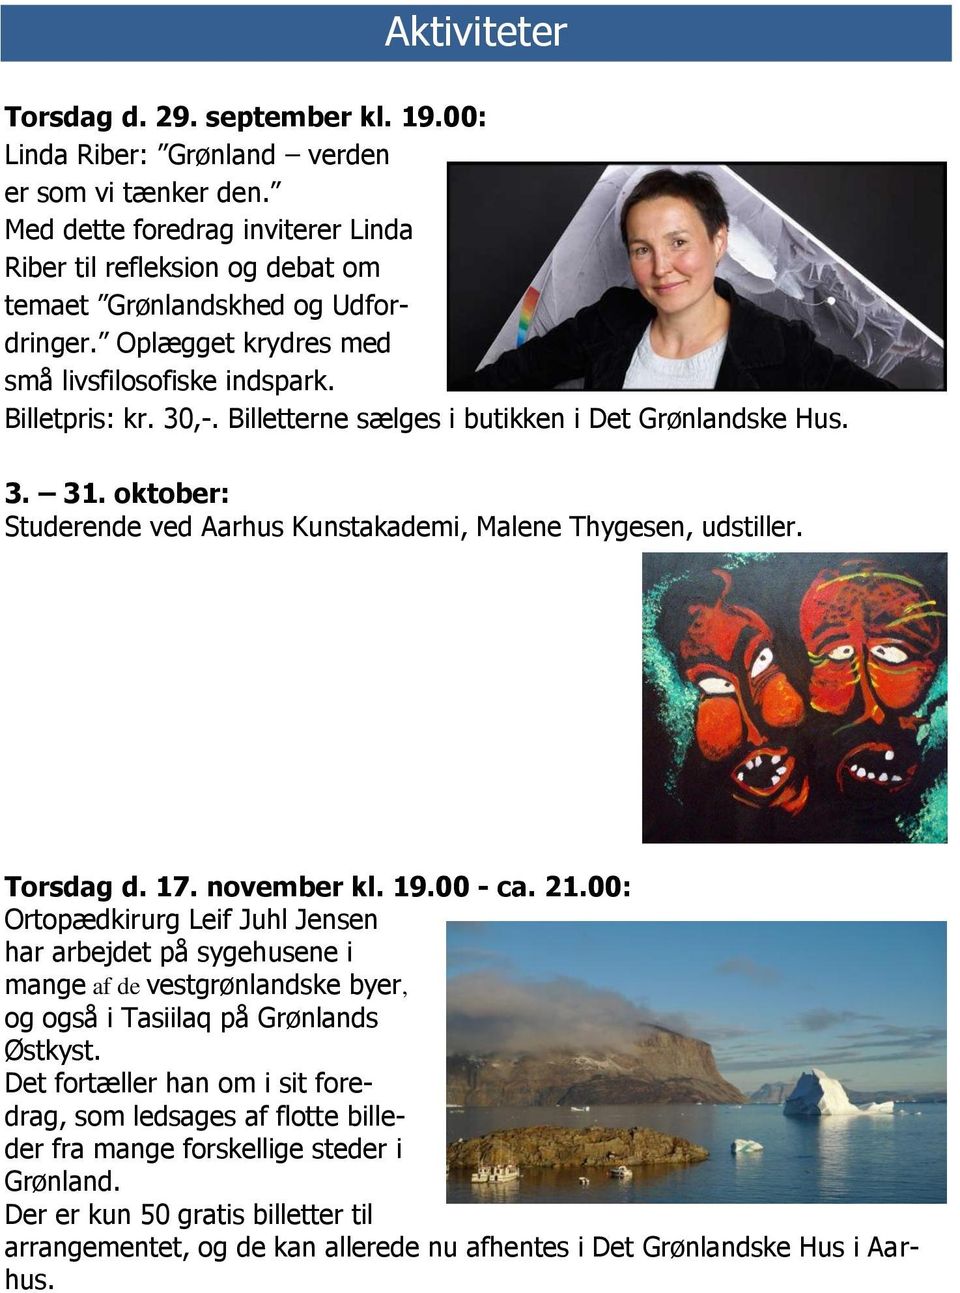 Billetterne sælges i butikken i Det Grønlandske Hus. 3. 31. oktober: Studerende ved Aarhus Kunstakademi, Malene Thygesen, udstiller. Torsdag d. 17. november kl. 19.00 - ca. 21.